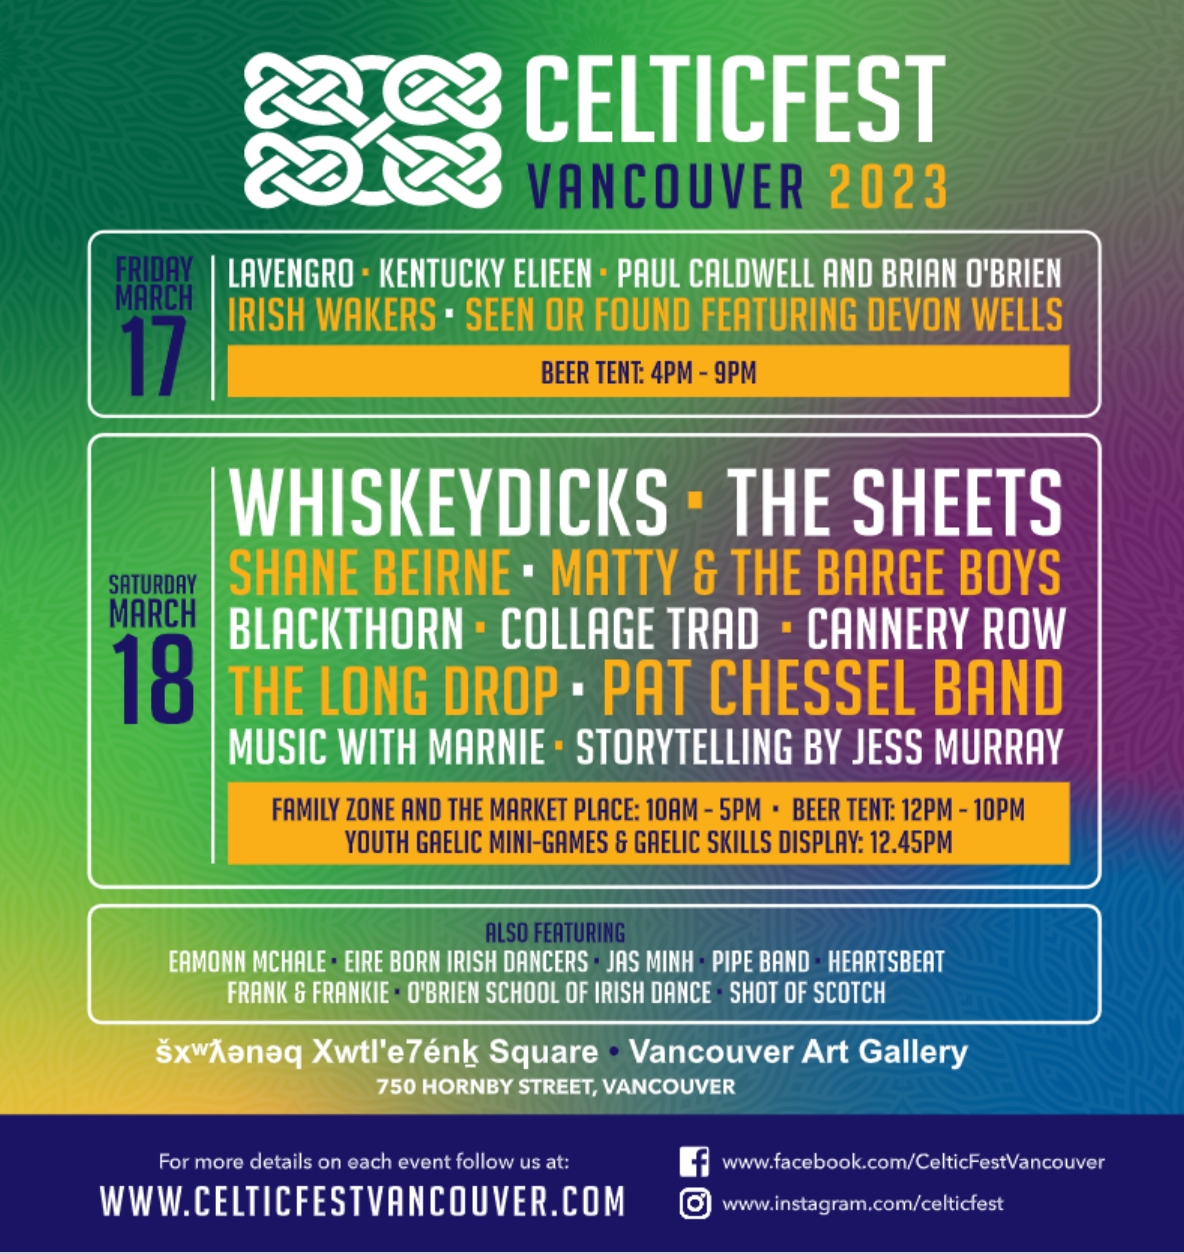 Celtic Fest Vancouver 2023: March 11-18